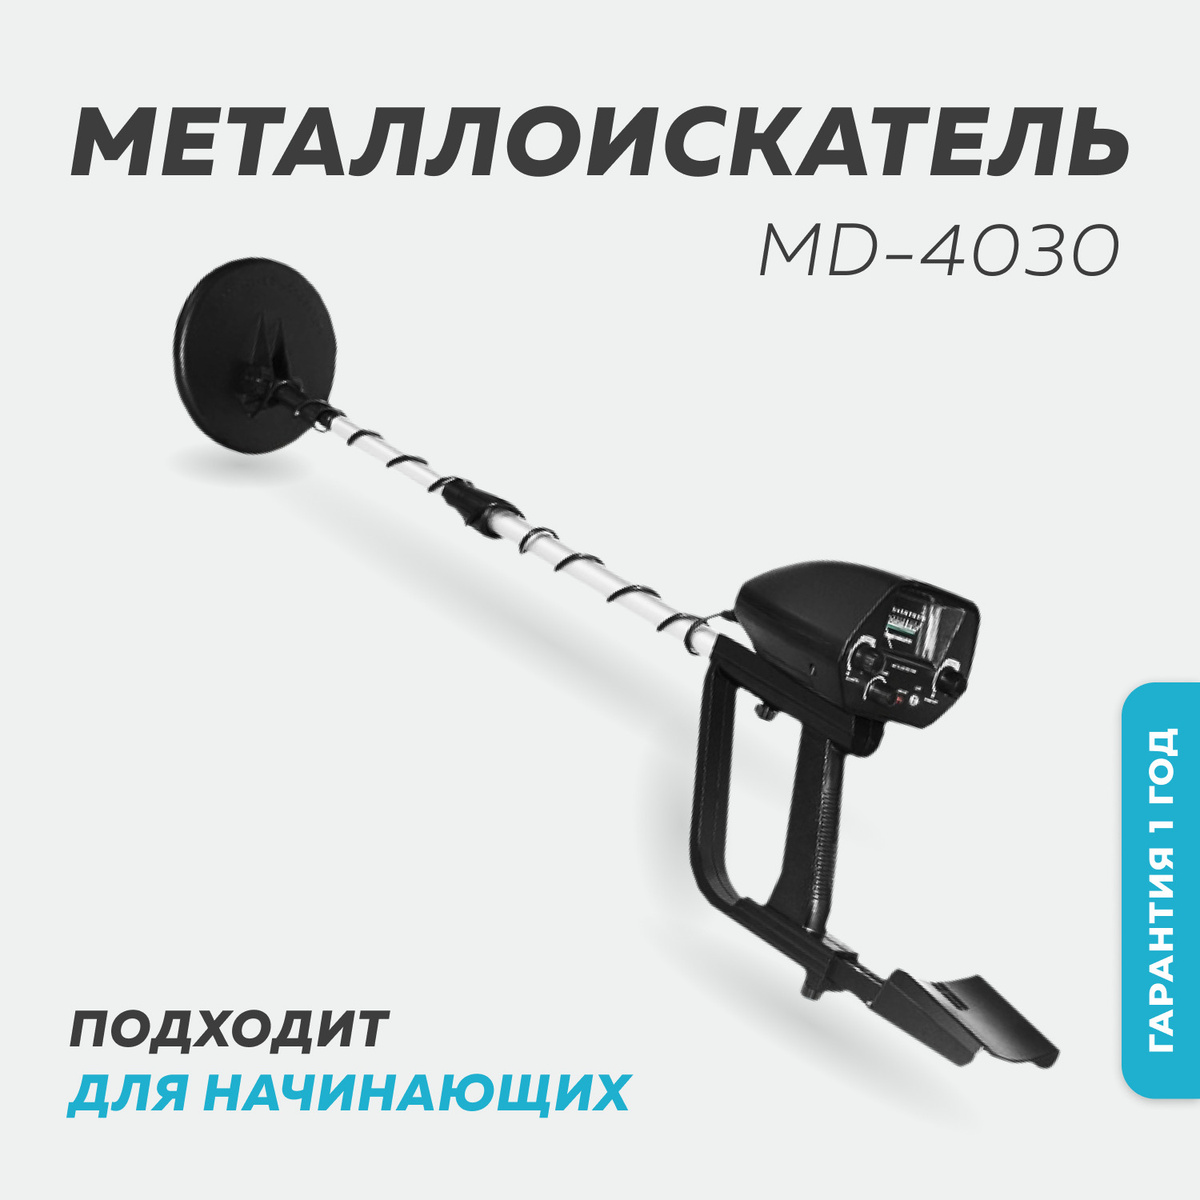 Купить Металлоискатель Md 4030 В Интернет Магазине